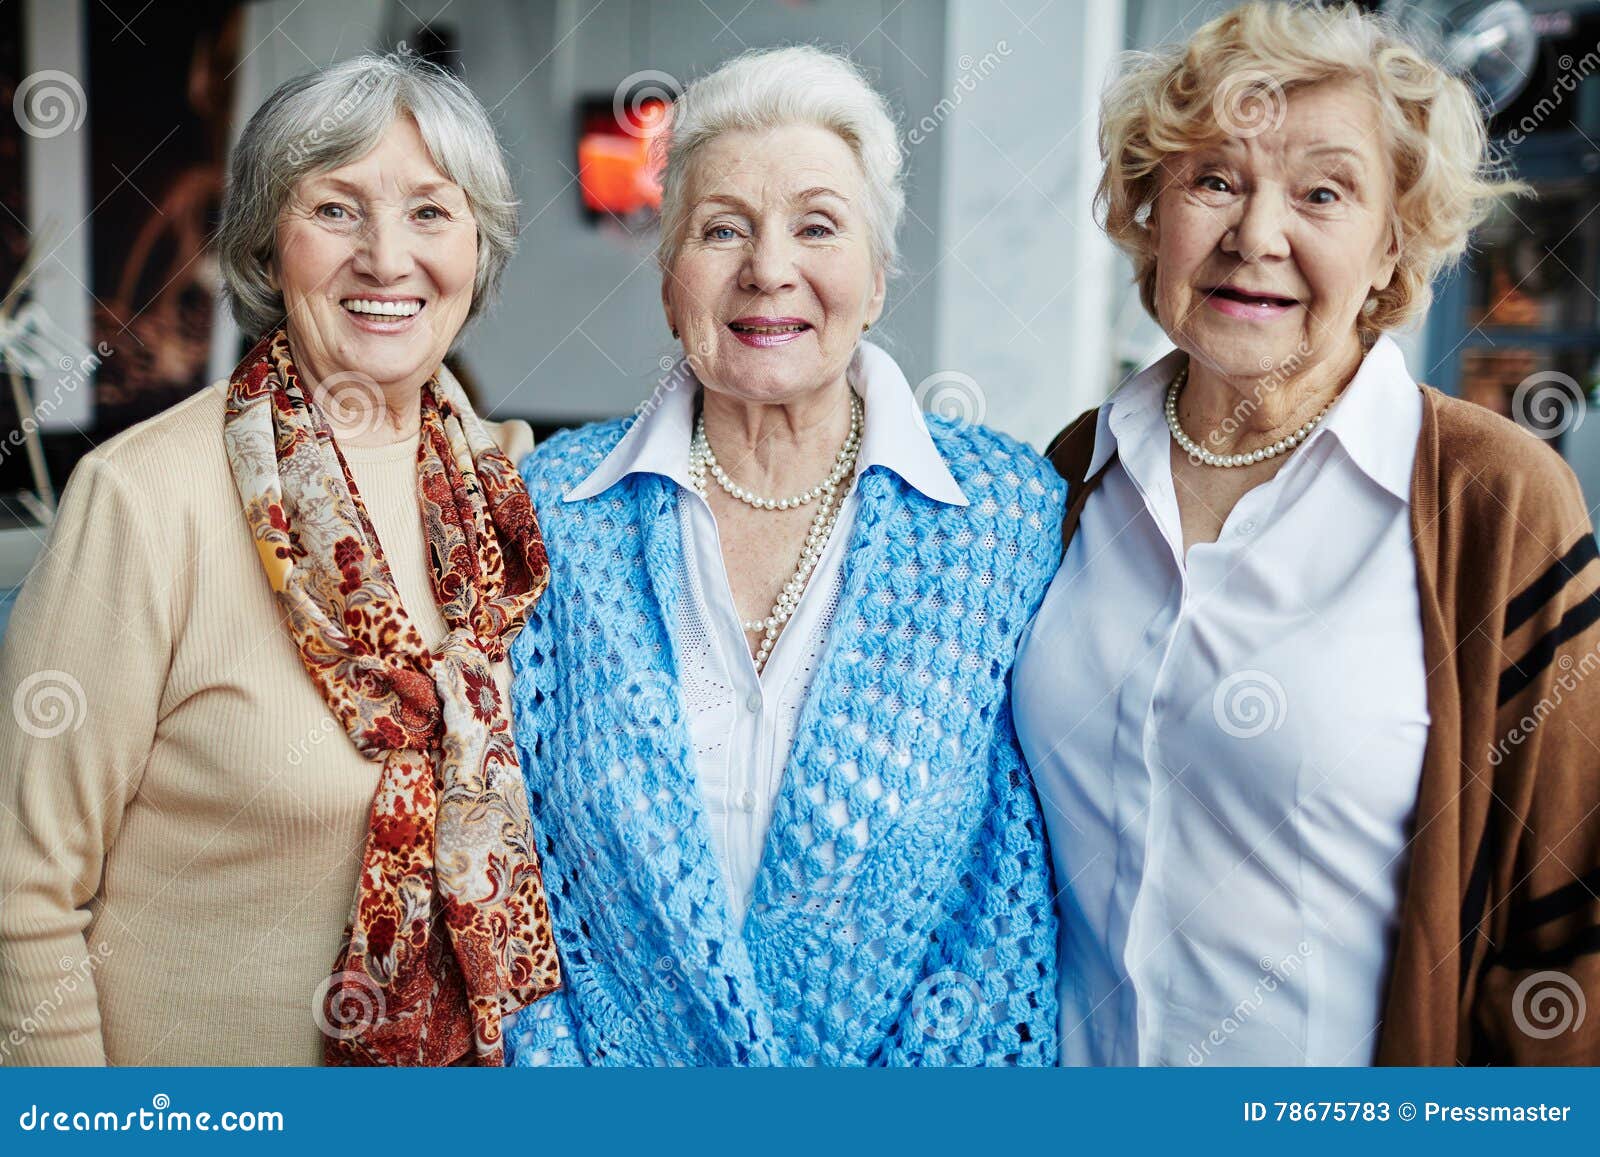 Matures Grannies Pics